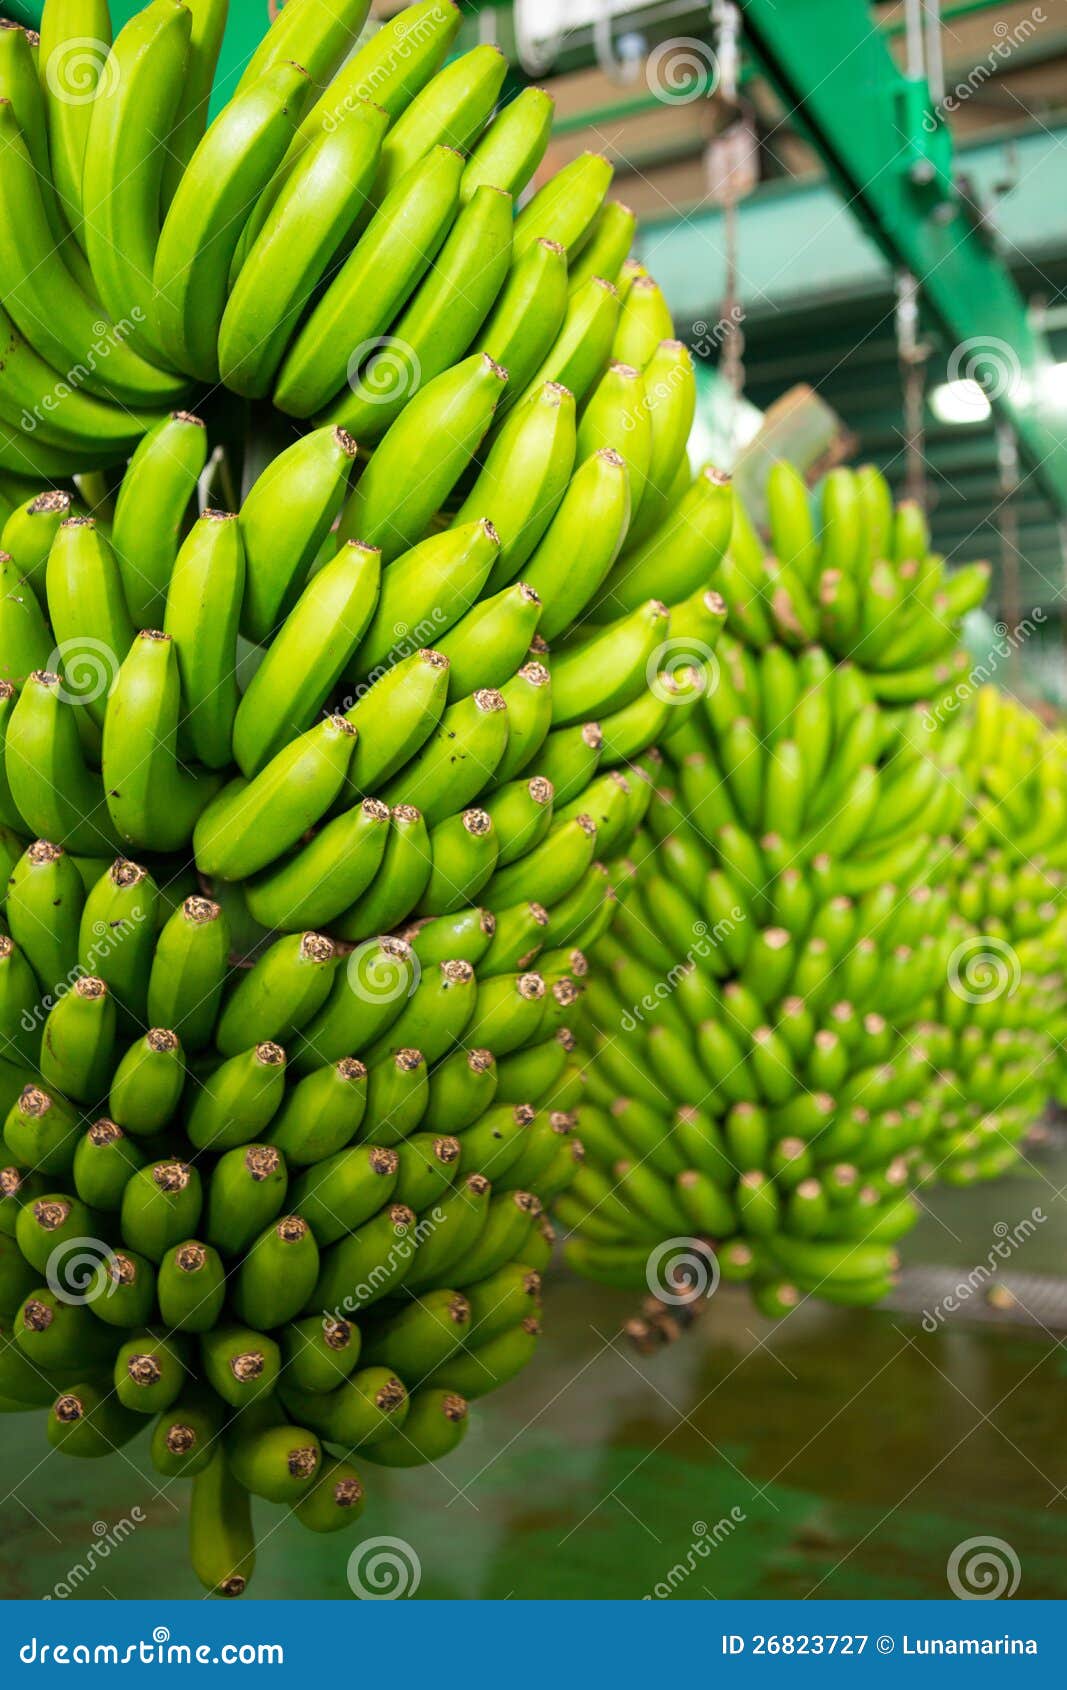 canarian banana platano in la palma